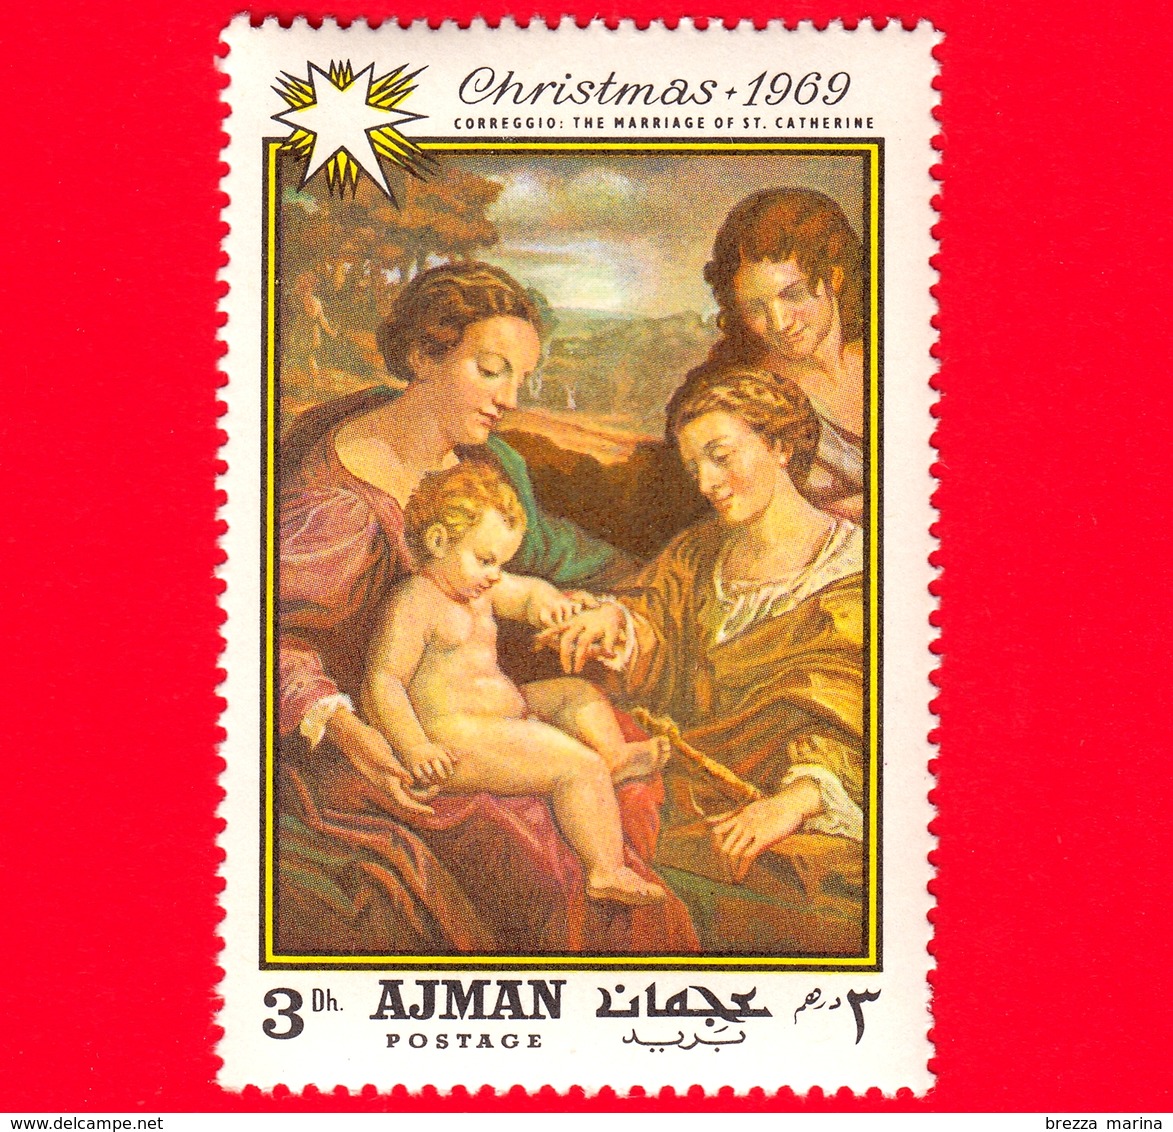 AJMAN - Nuovo - 1969 - Natale - Dipinto Di Correggio - Matrimonio Di Santa Caterina - 3 - Ajman